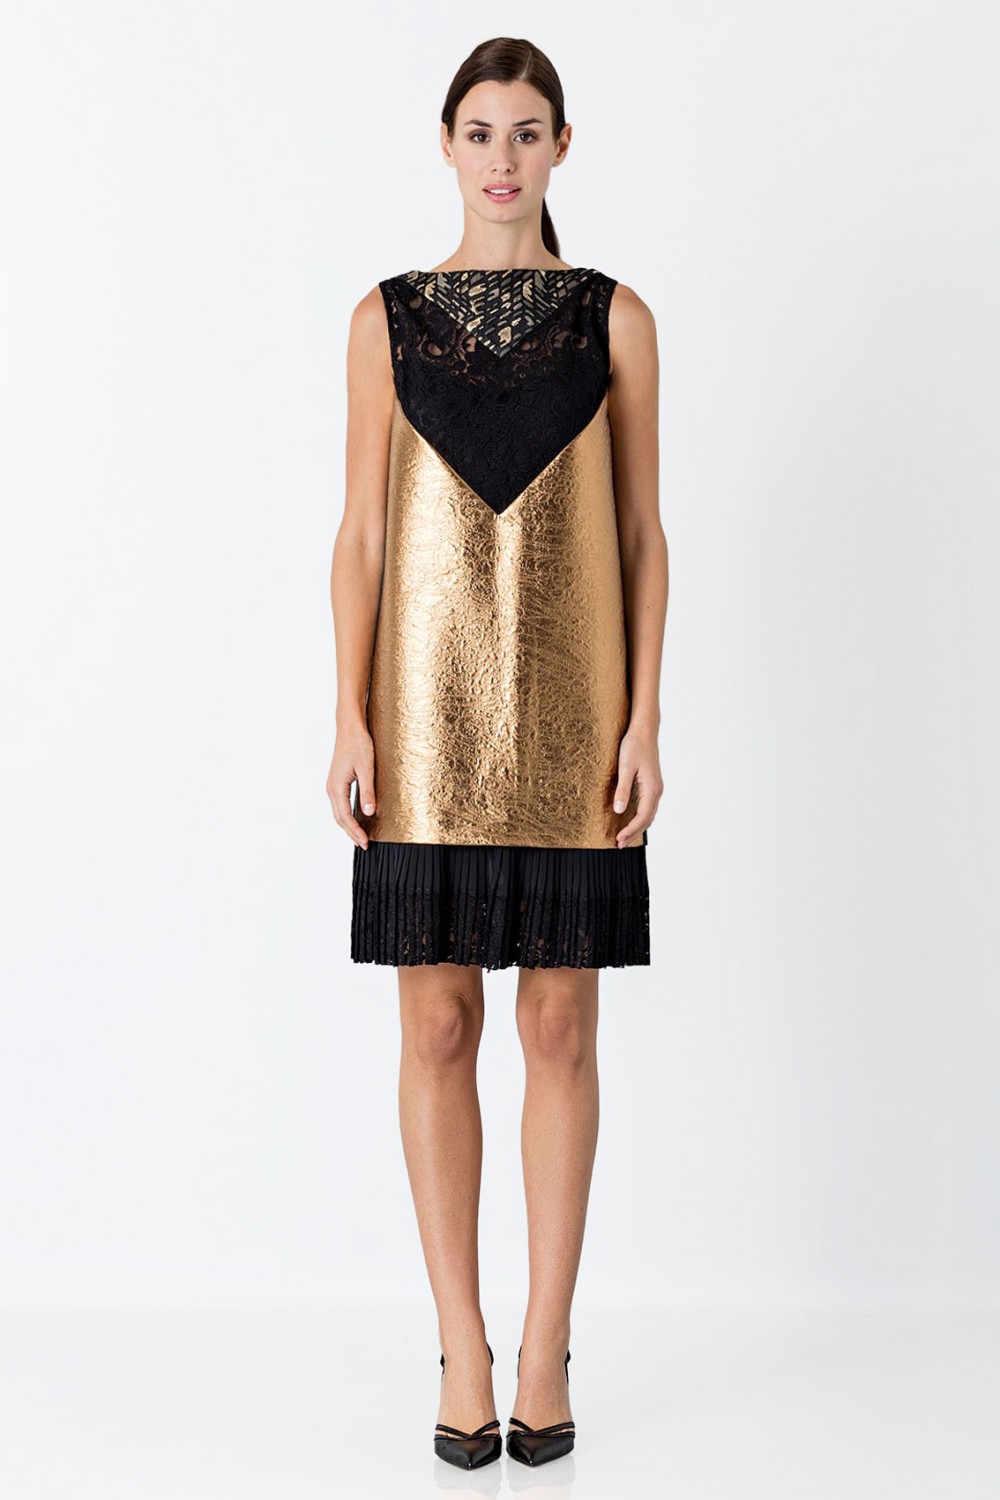 Vendita Abbigliamento Usato FIrmato - Gold short dress - Antonio Marras - Drexcode -5